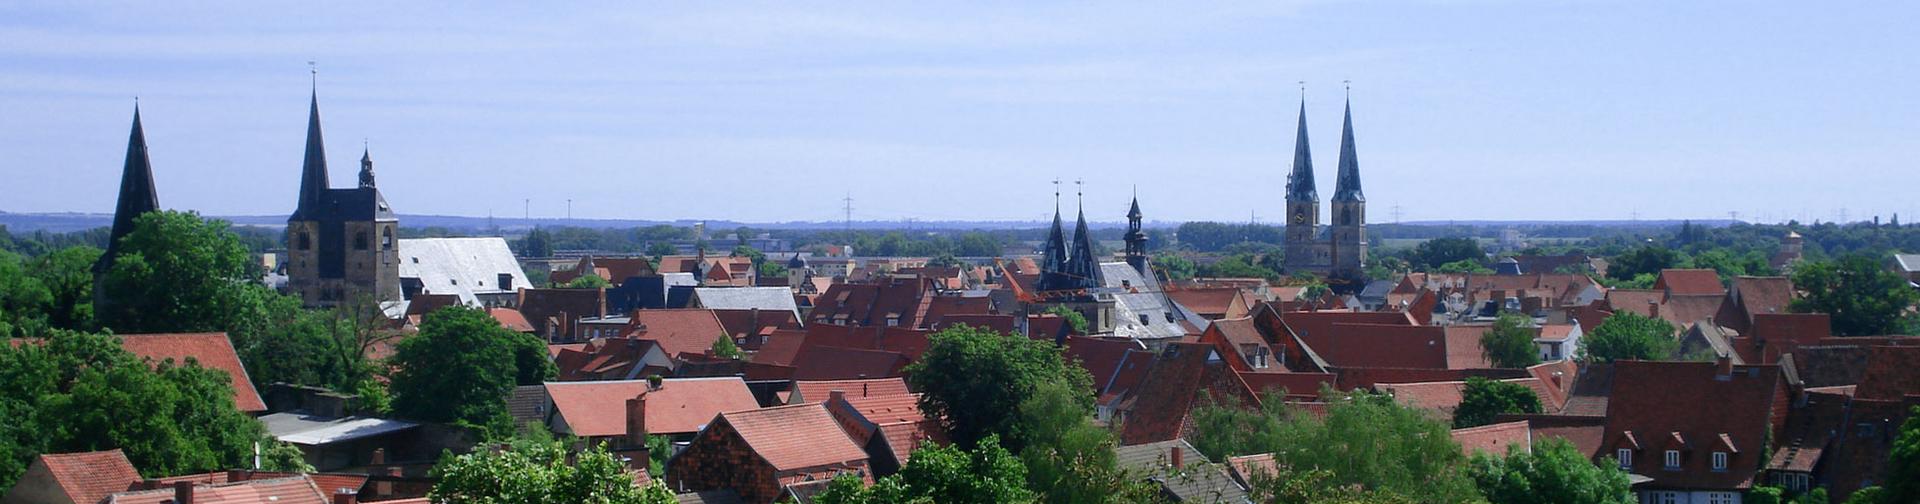 Quedlinburg. Panoramabild